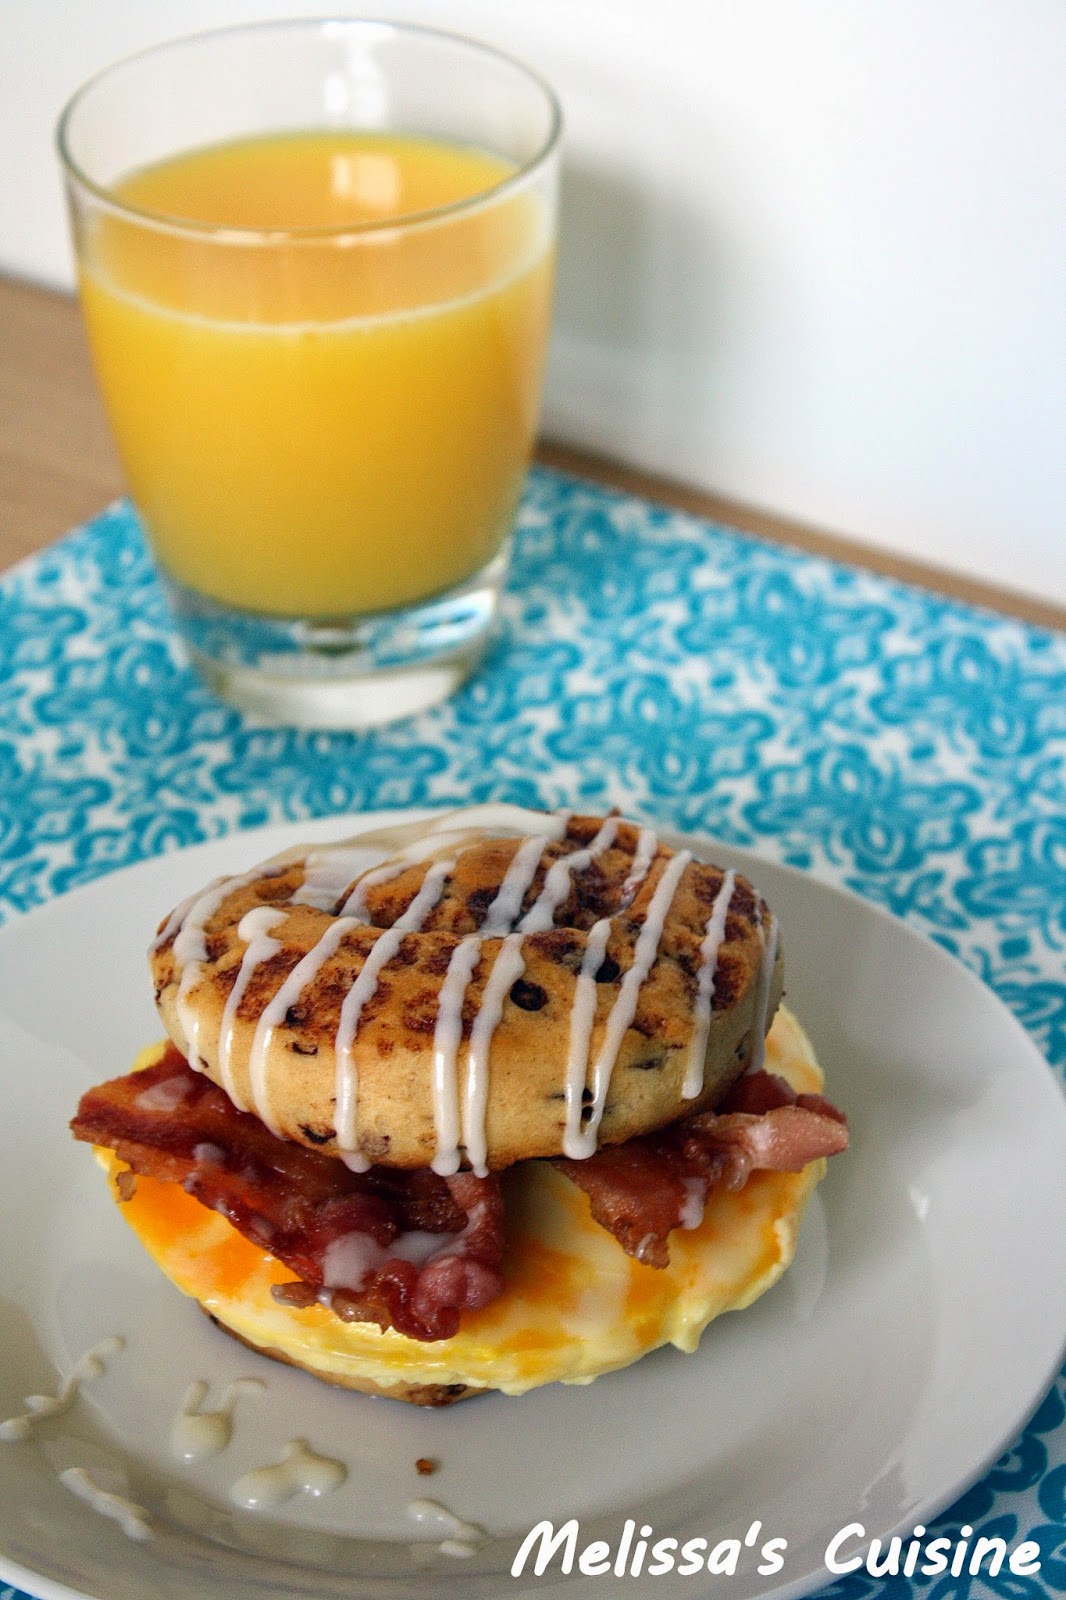 Melissa's Cuisine: Cinnamon Roll Breakfast Sandwich